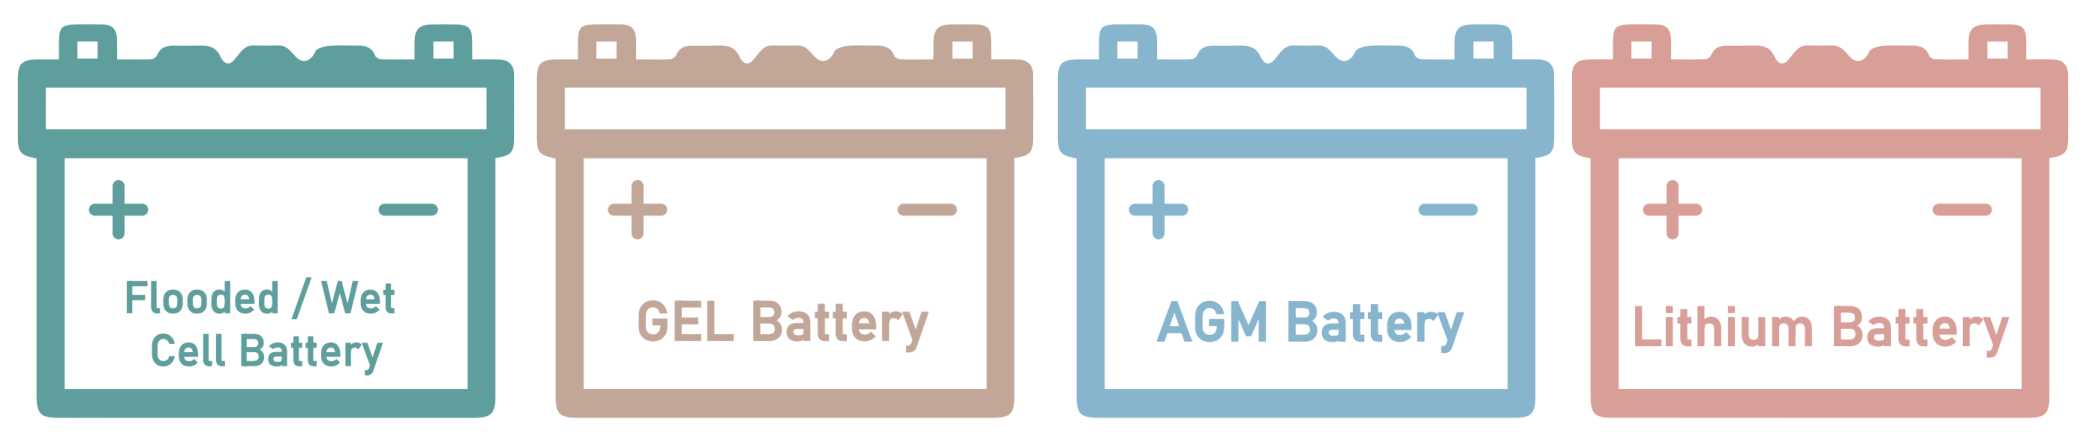 batterie pour autolaveuse AGM Lithium